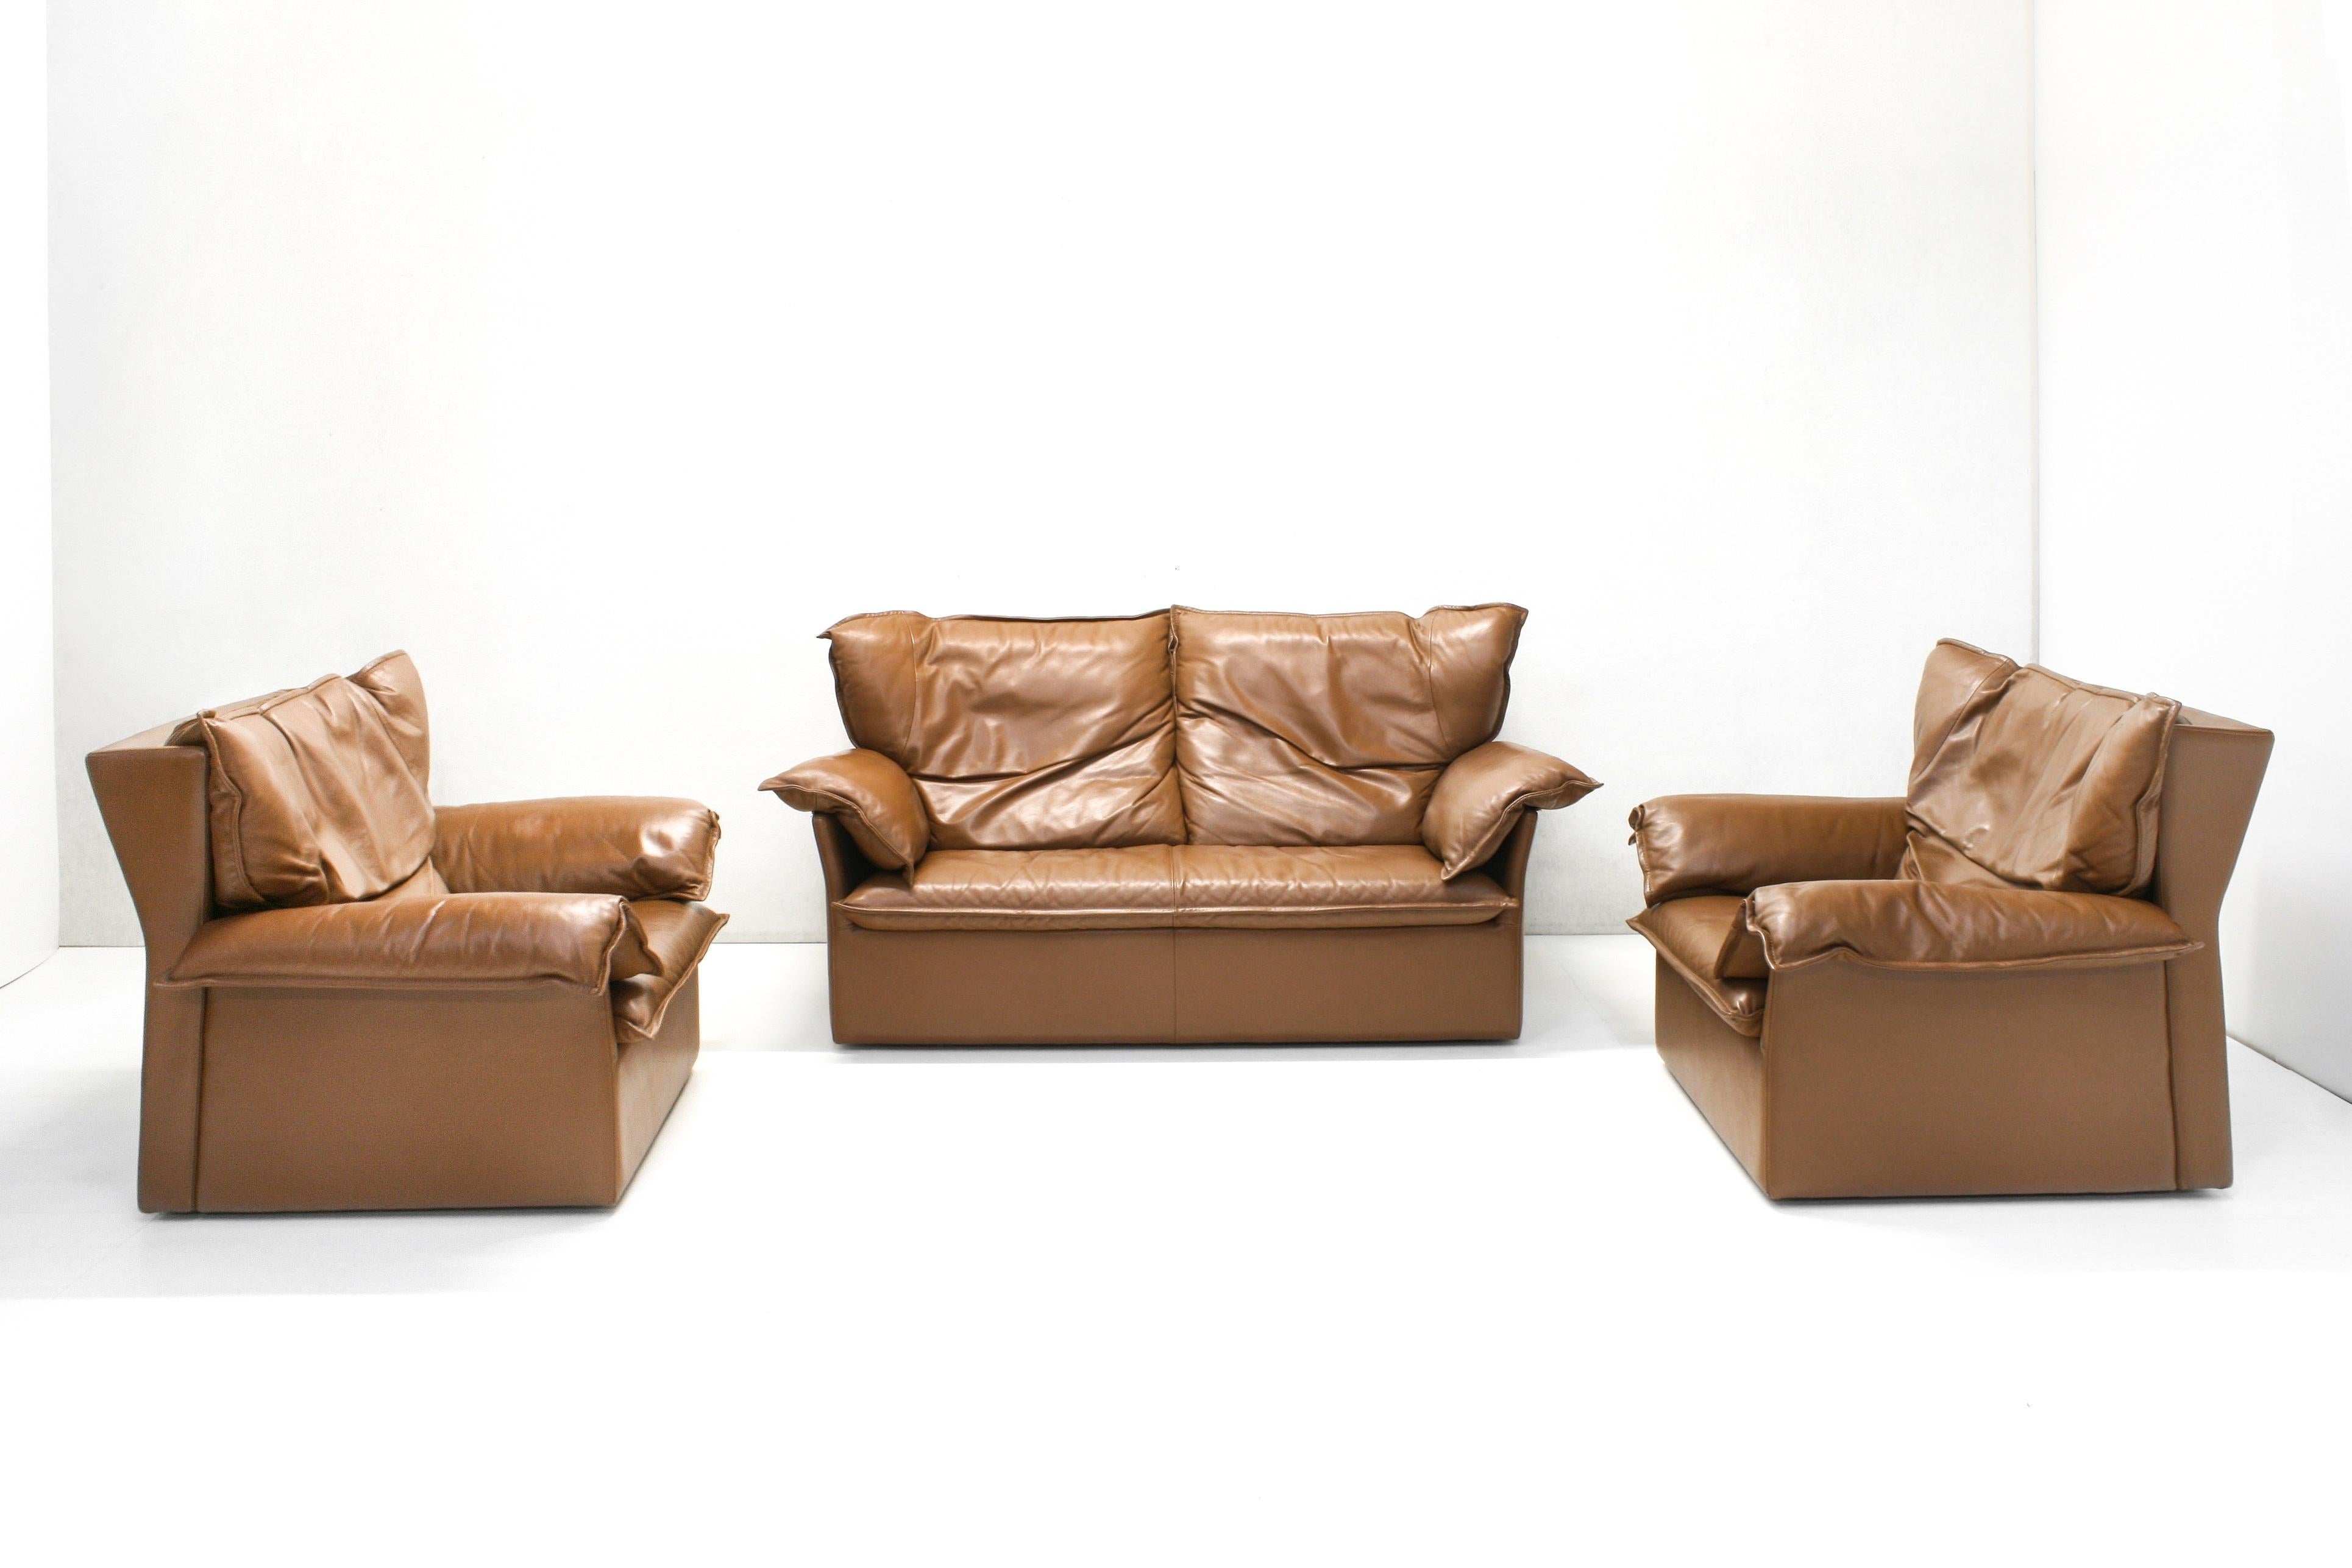 Dieses sehr bequeme, mit Daunen gefüllte Zweisitzer-Sofa der renommierten belgischen Firma Durlet wurde in den 1970er Jahren entworfen und ist noch immer in einem hervorragenden Zustand.